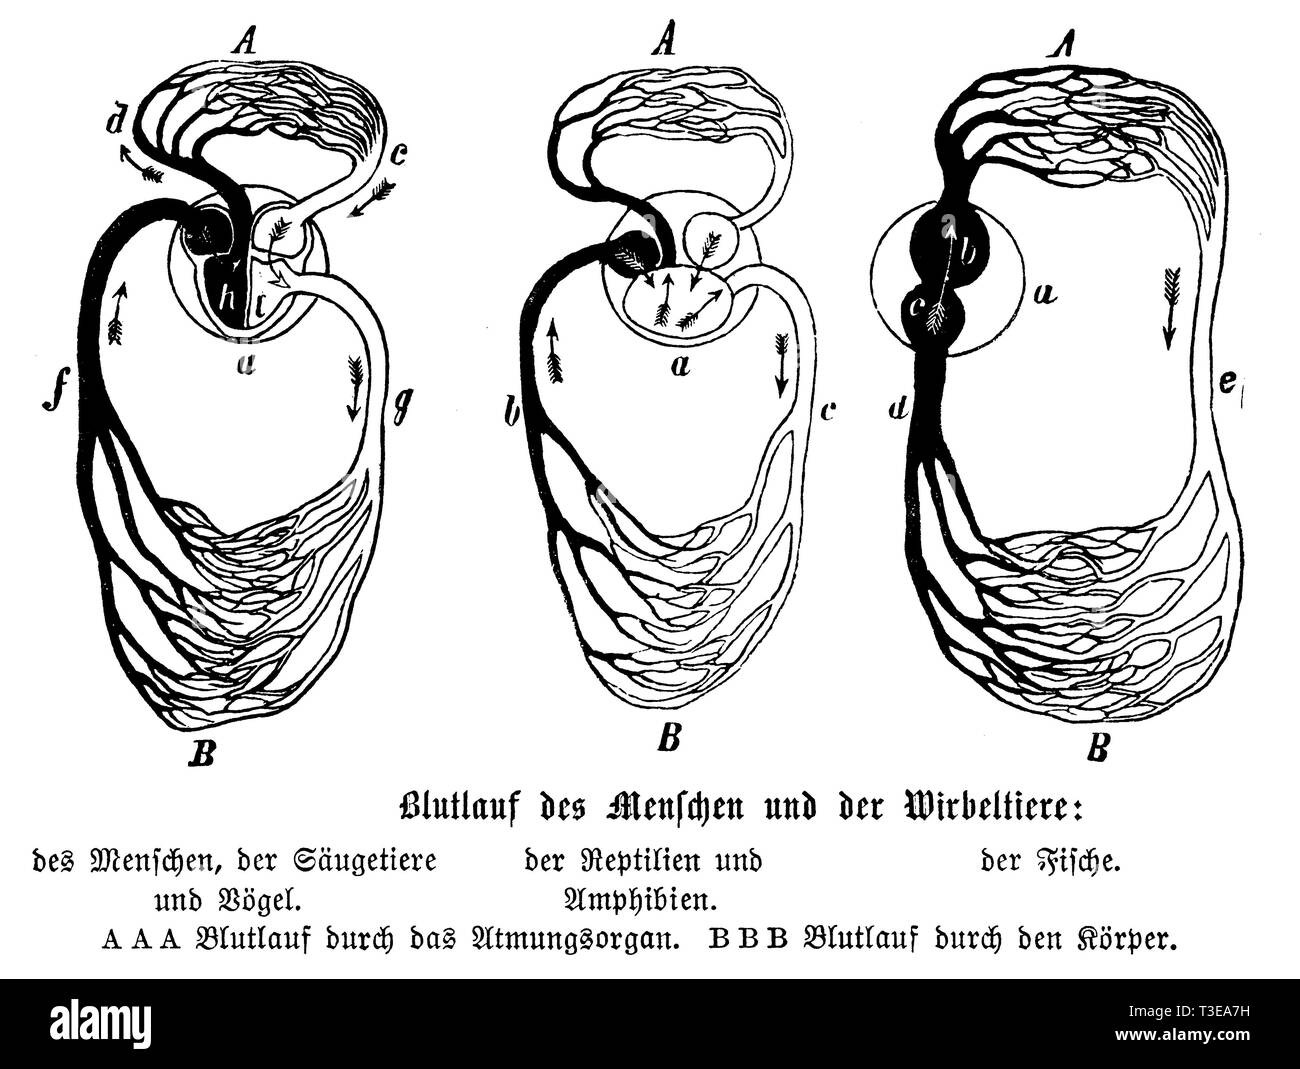 Durchblutung von Menschen, Säugetiere, Vögel, Amphibien, Reptilien und Fische, anonym 1886 Stockfoto